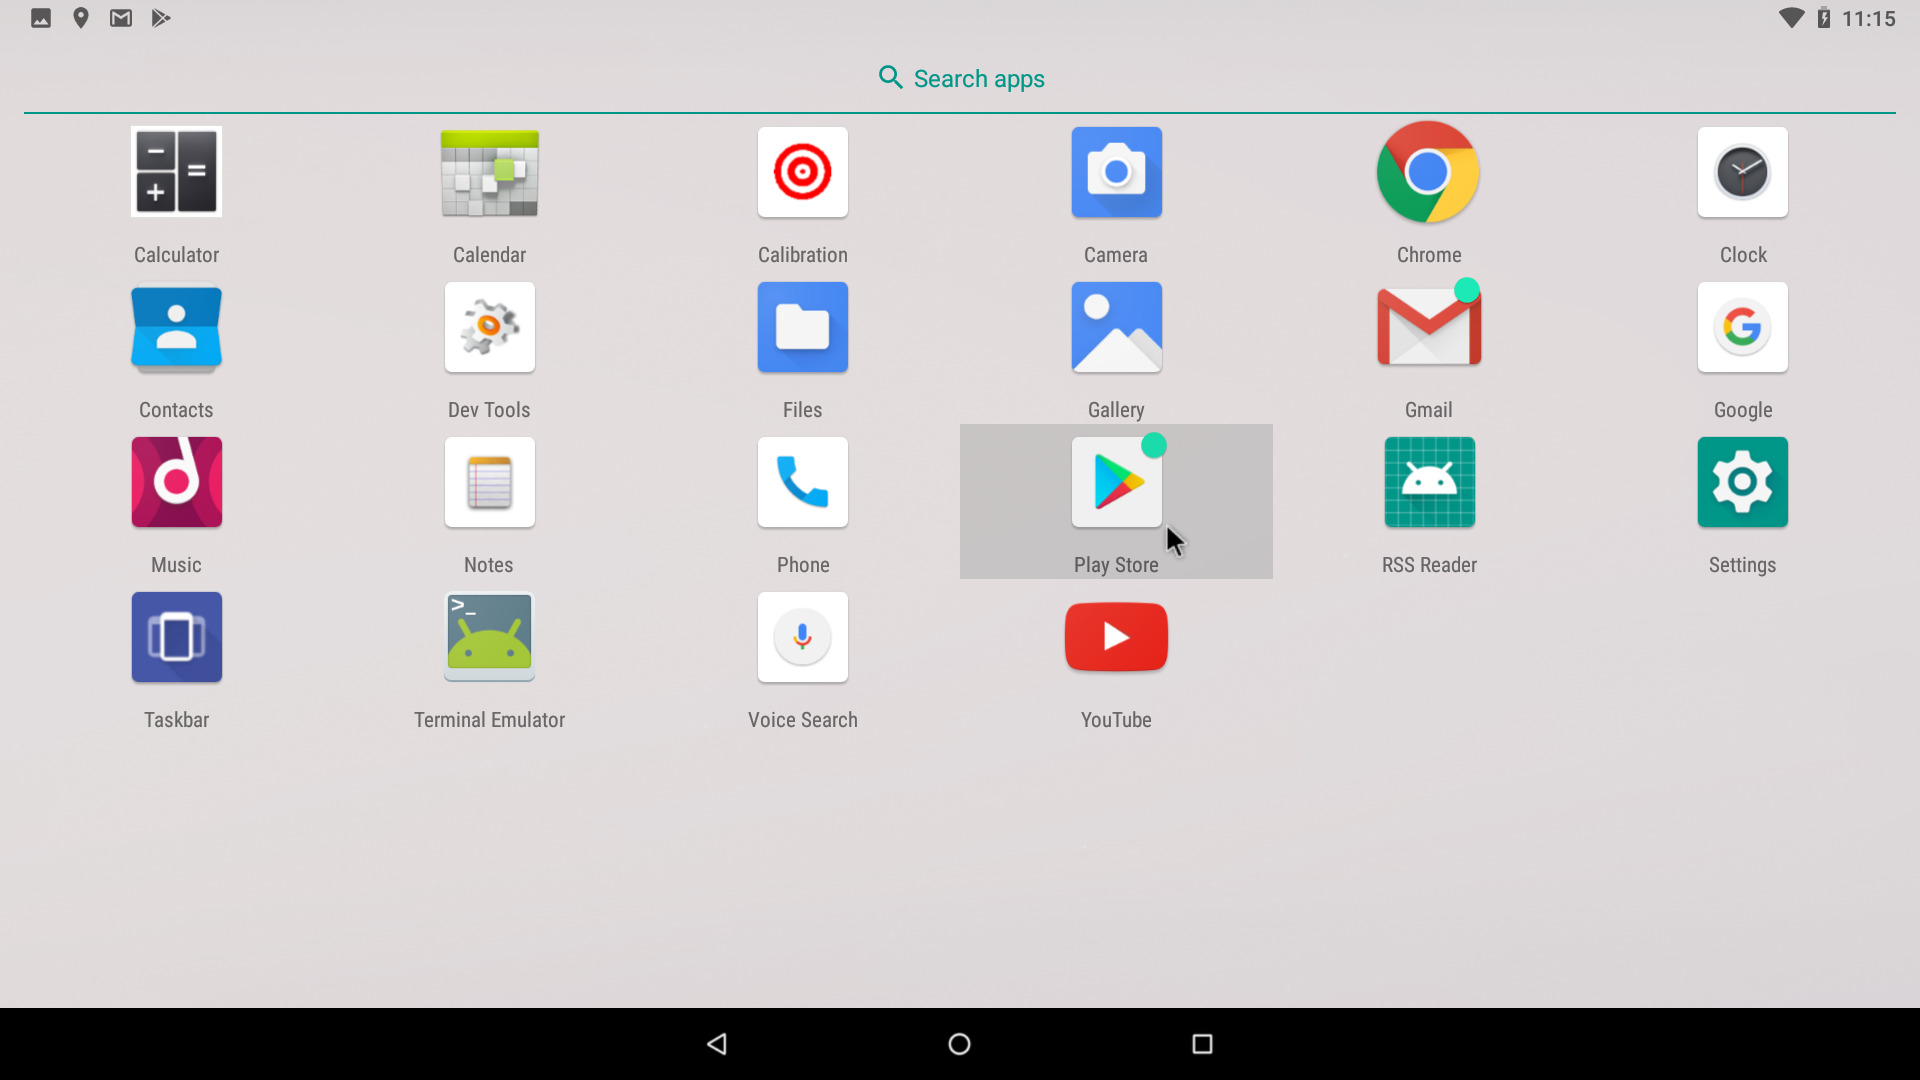 Android-x86 quase lançando com Andoid 9